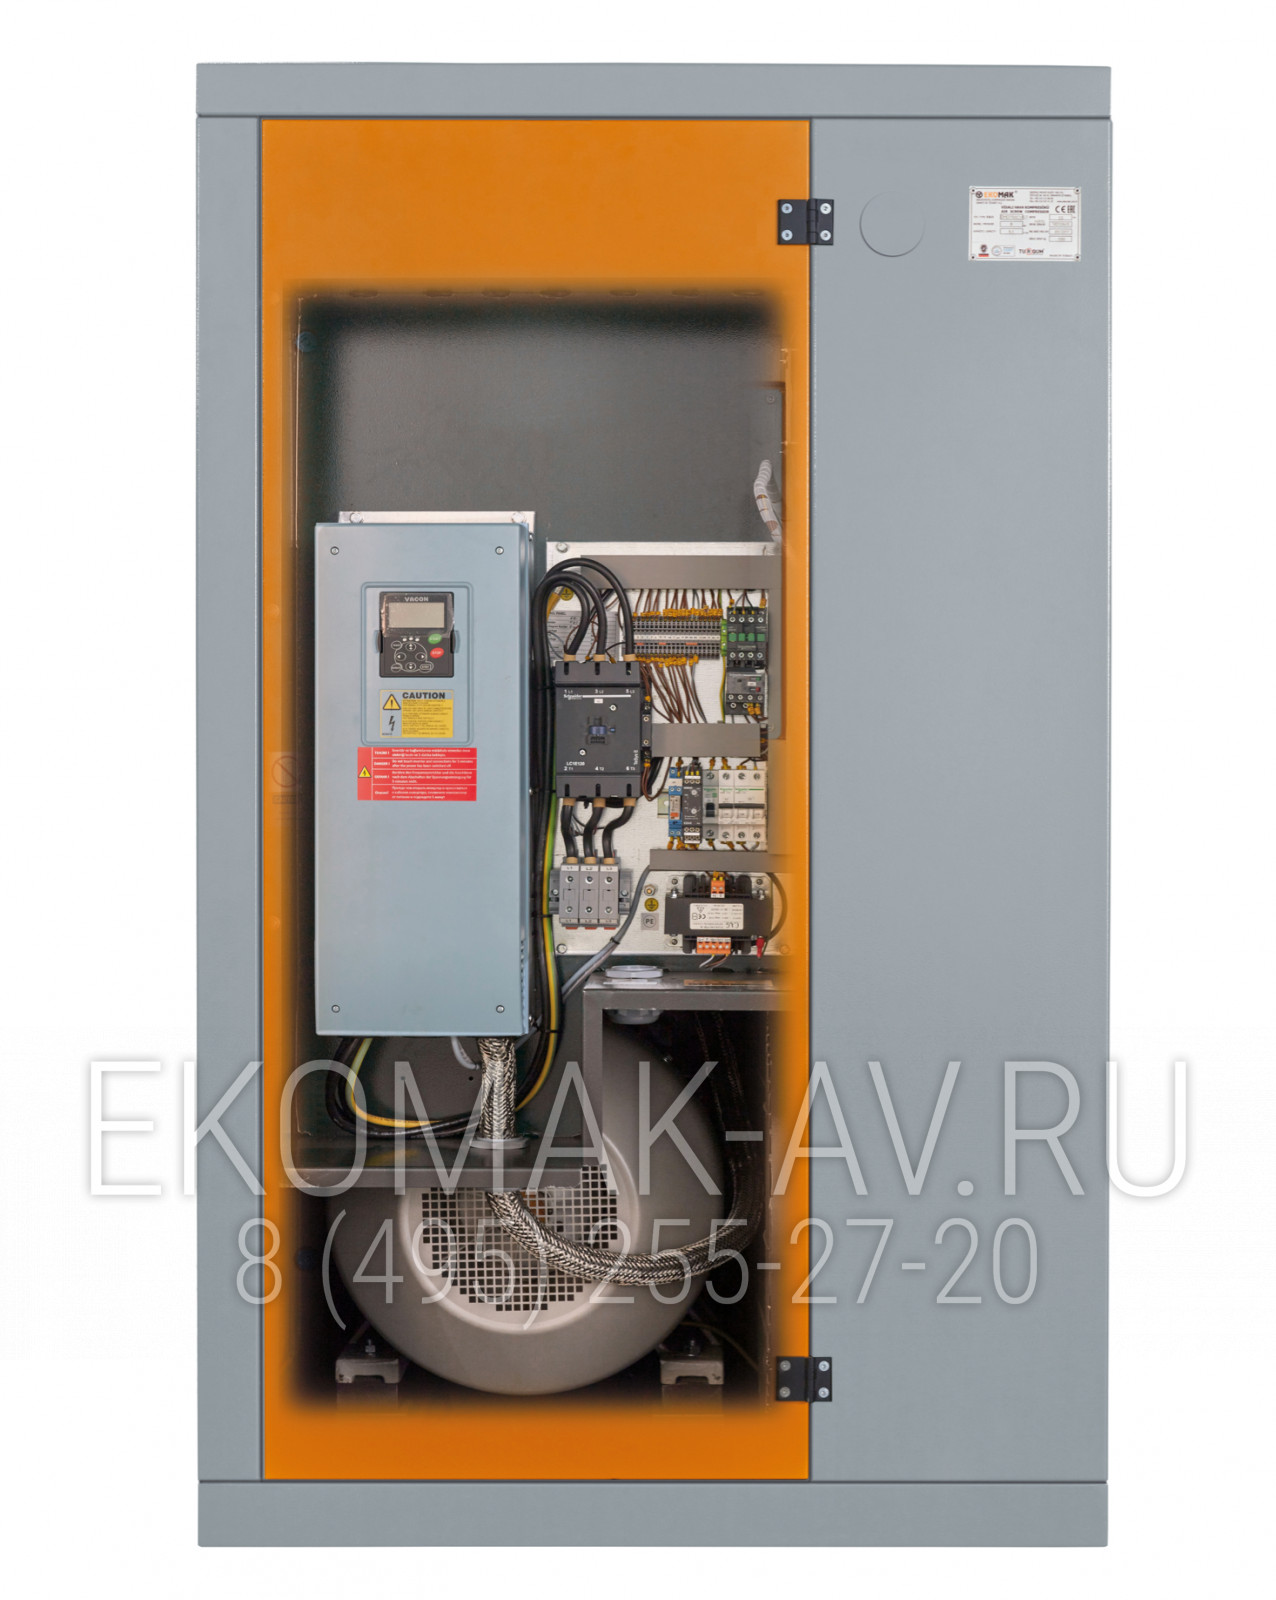 Винтовой компрессор Ekomak DMD 1000C VST 10